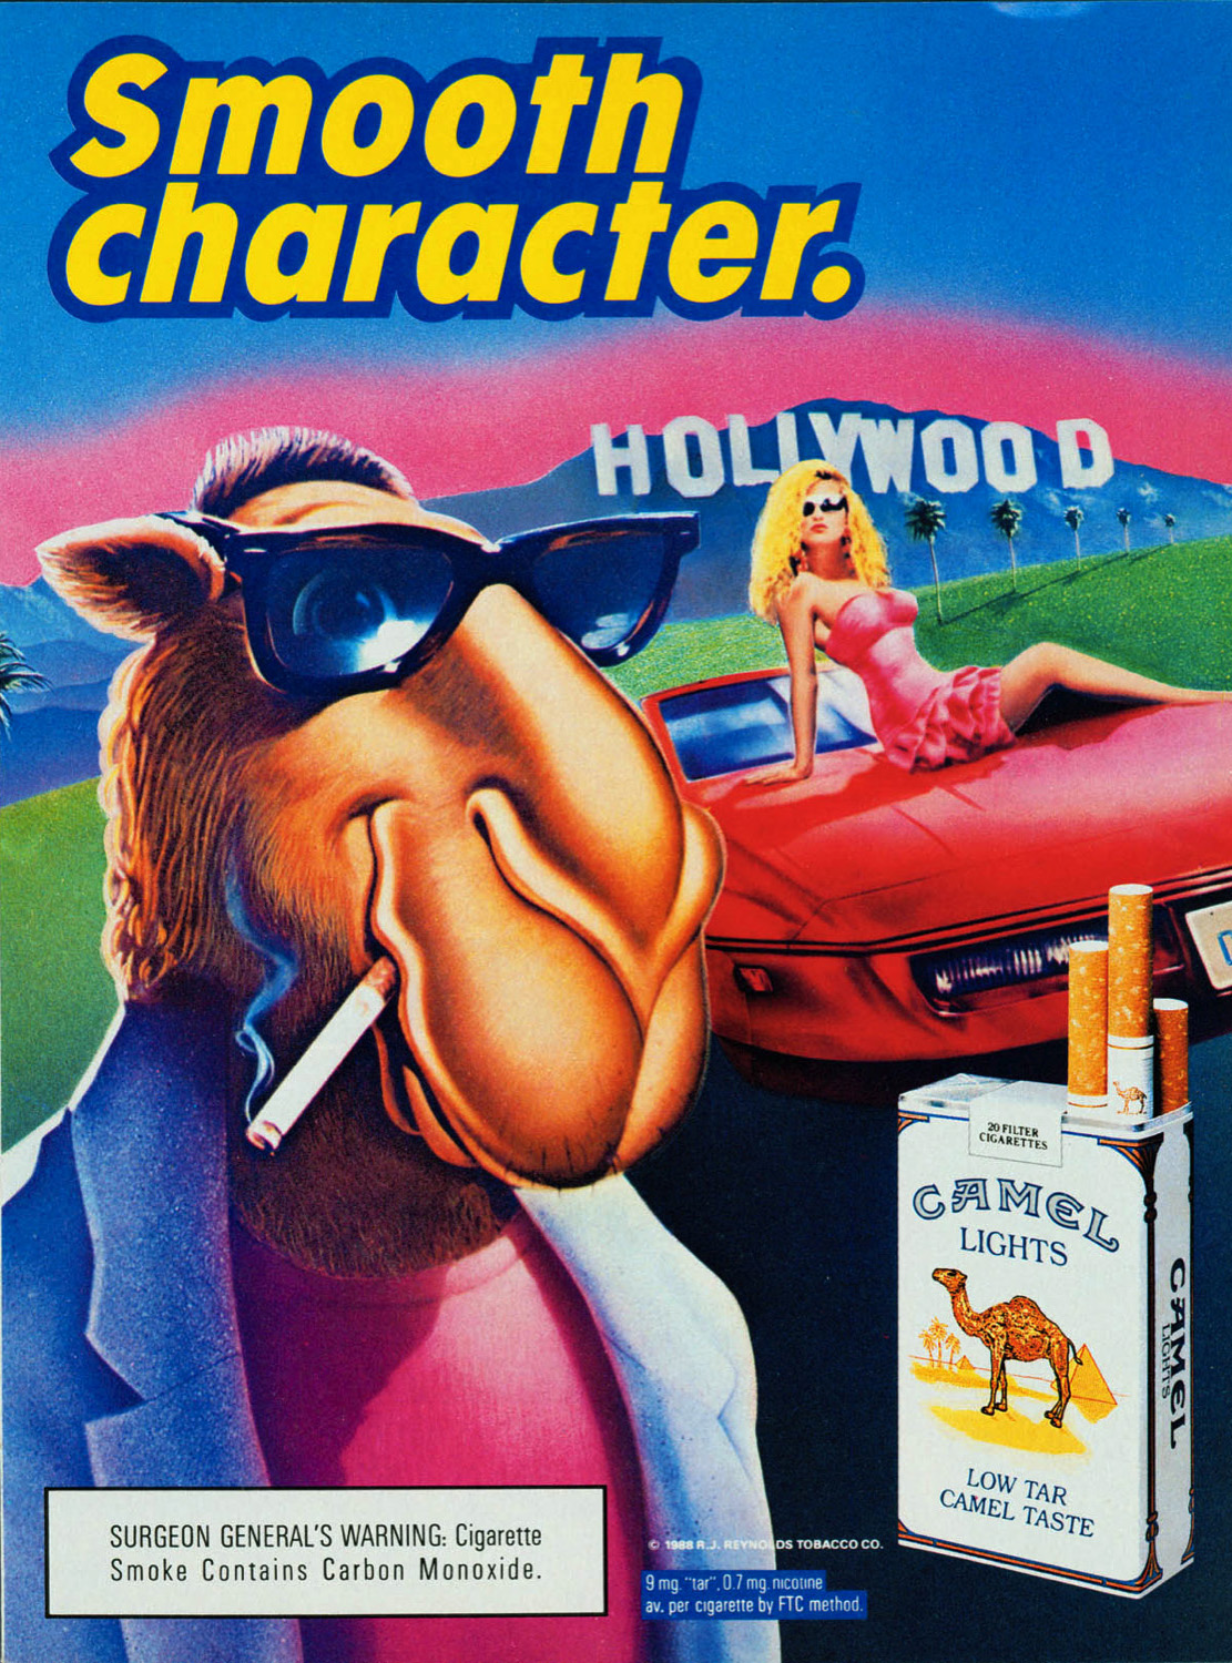 Campagne « Joe Camel Cartoon », 1988, image archivée dans le cadre du Programme de Recherche sur l’impact de la publicité cigarettière (SRITA), Université de Stanford.